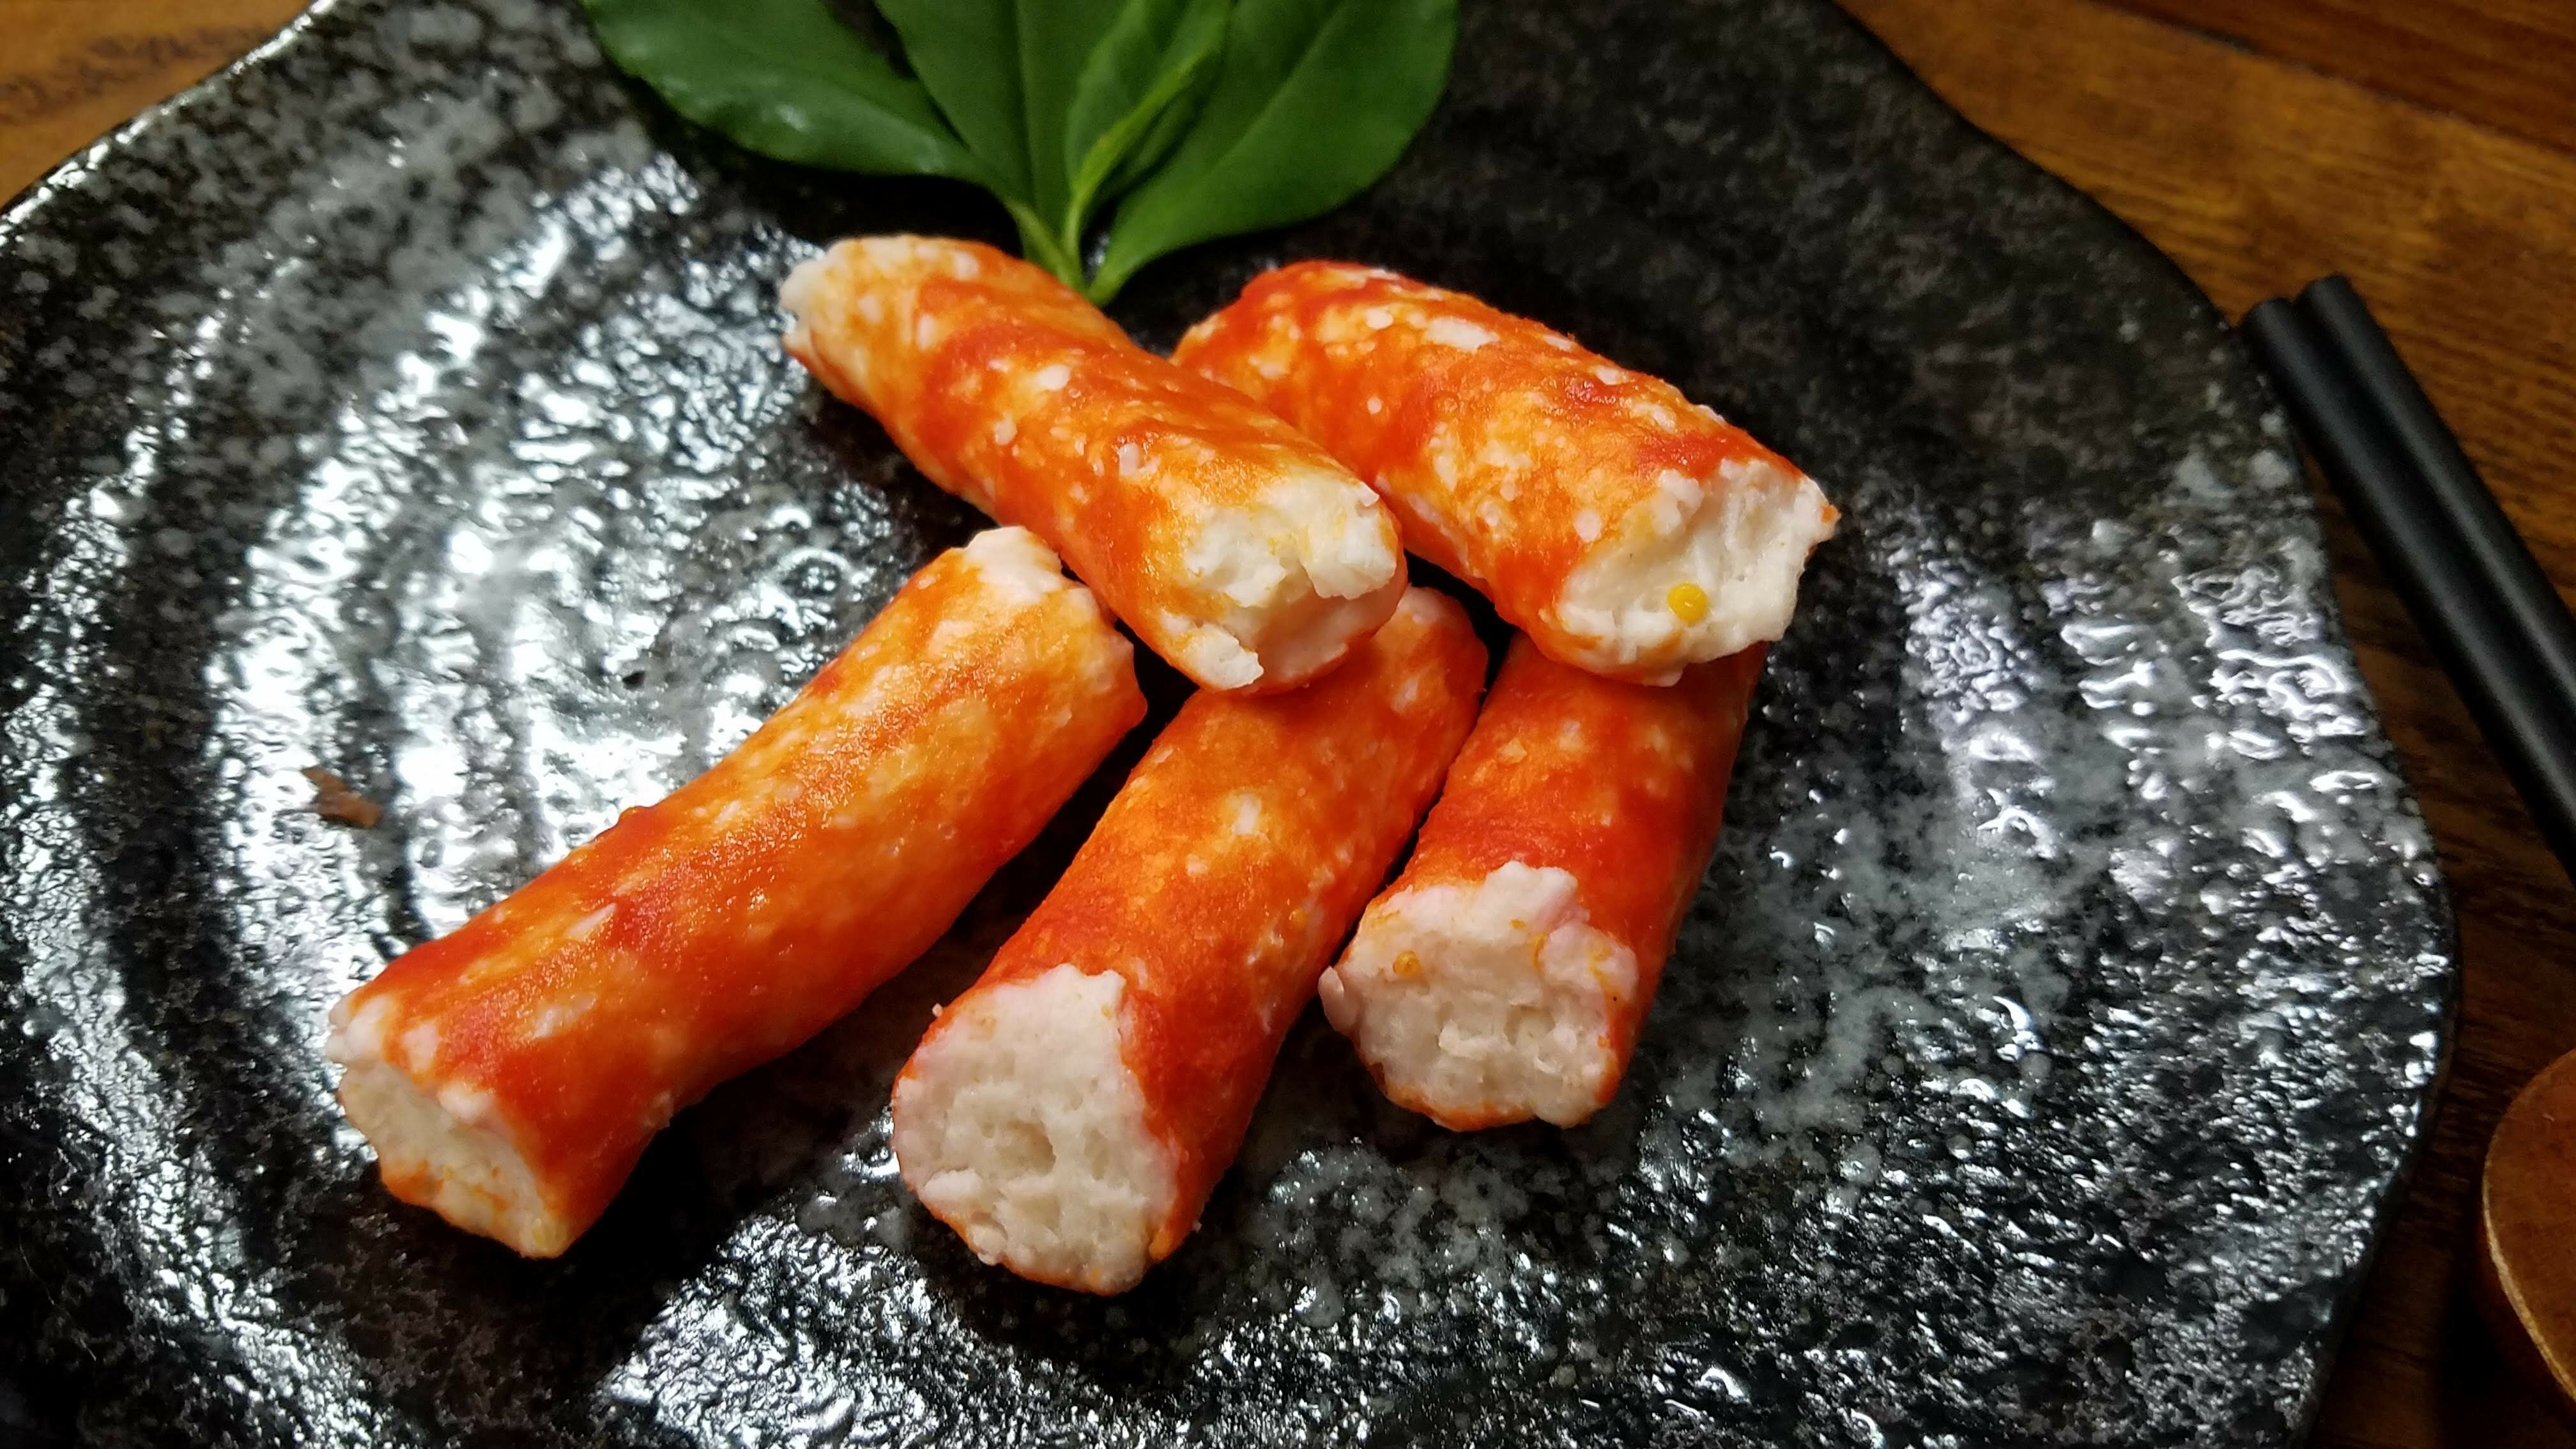 櫻花蝦卵 250g【利津食品行】火鍋料 關東煮 飛魚卵 冷凍食品